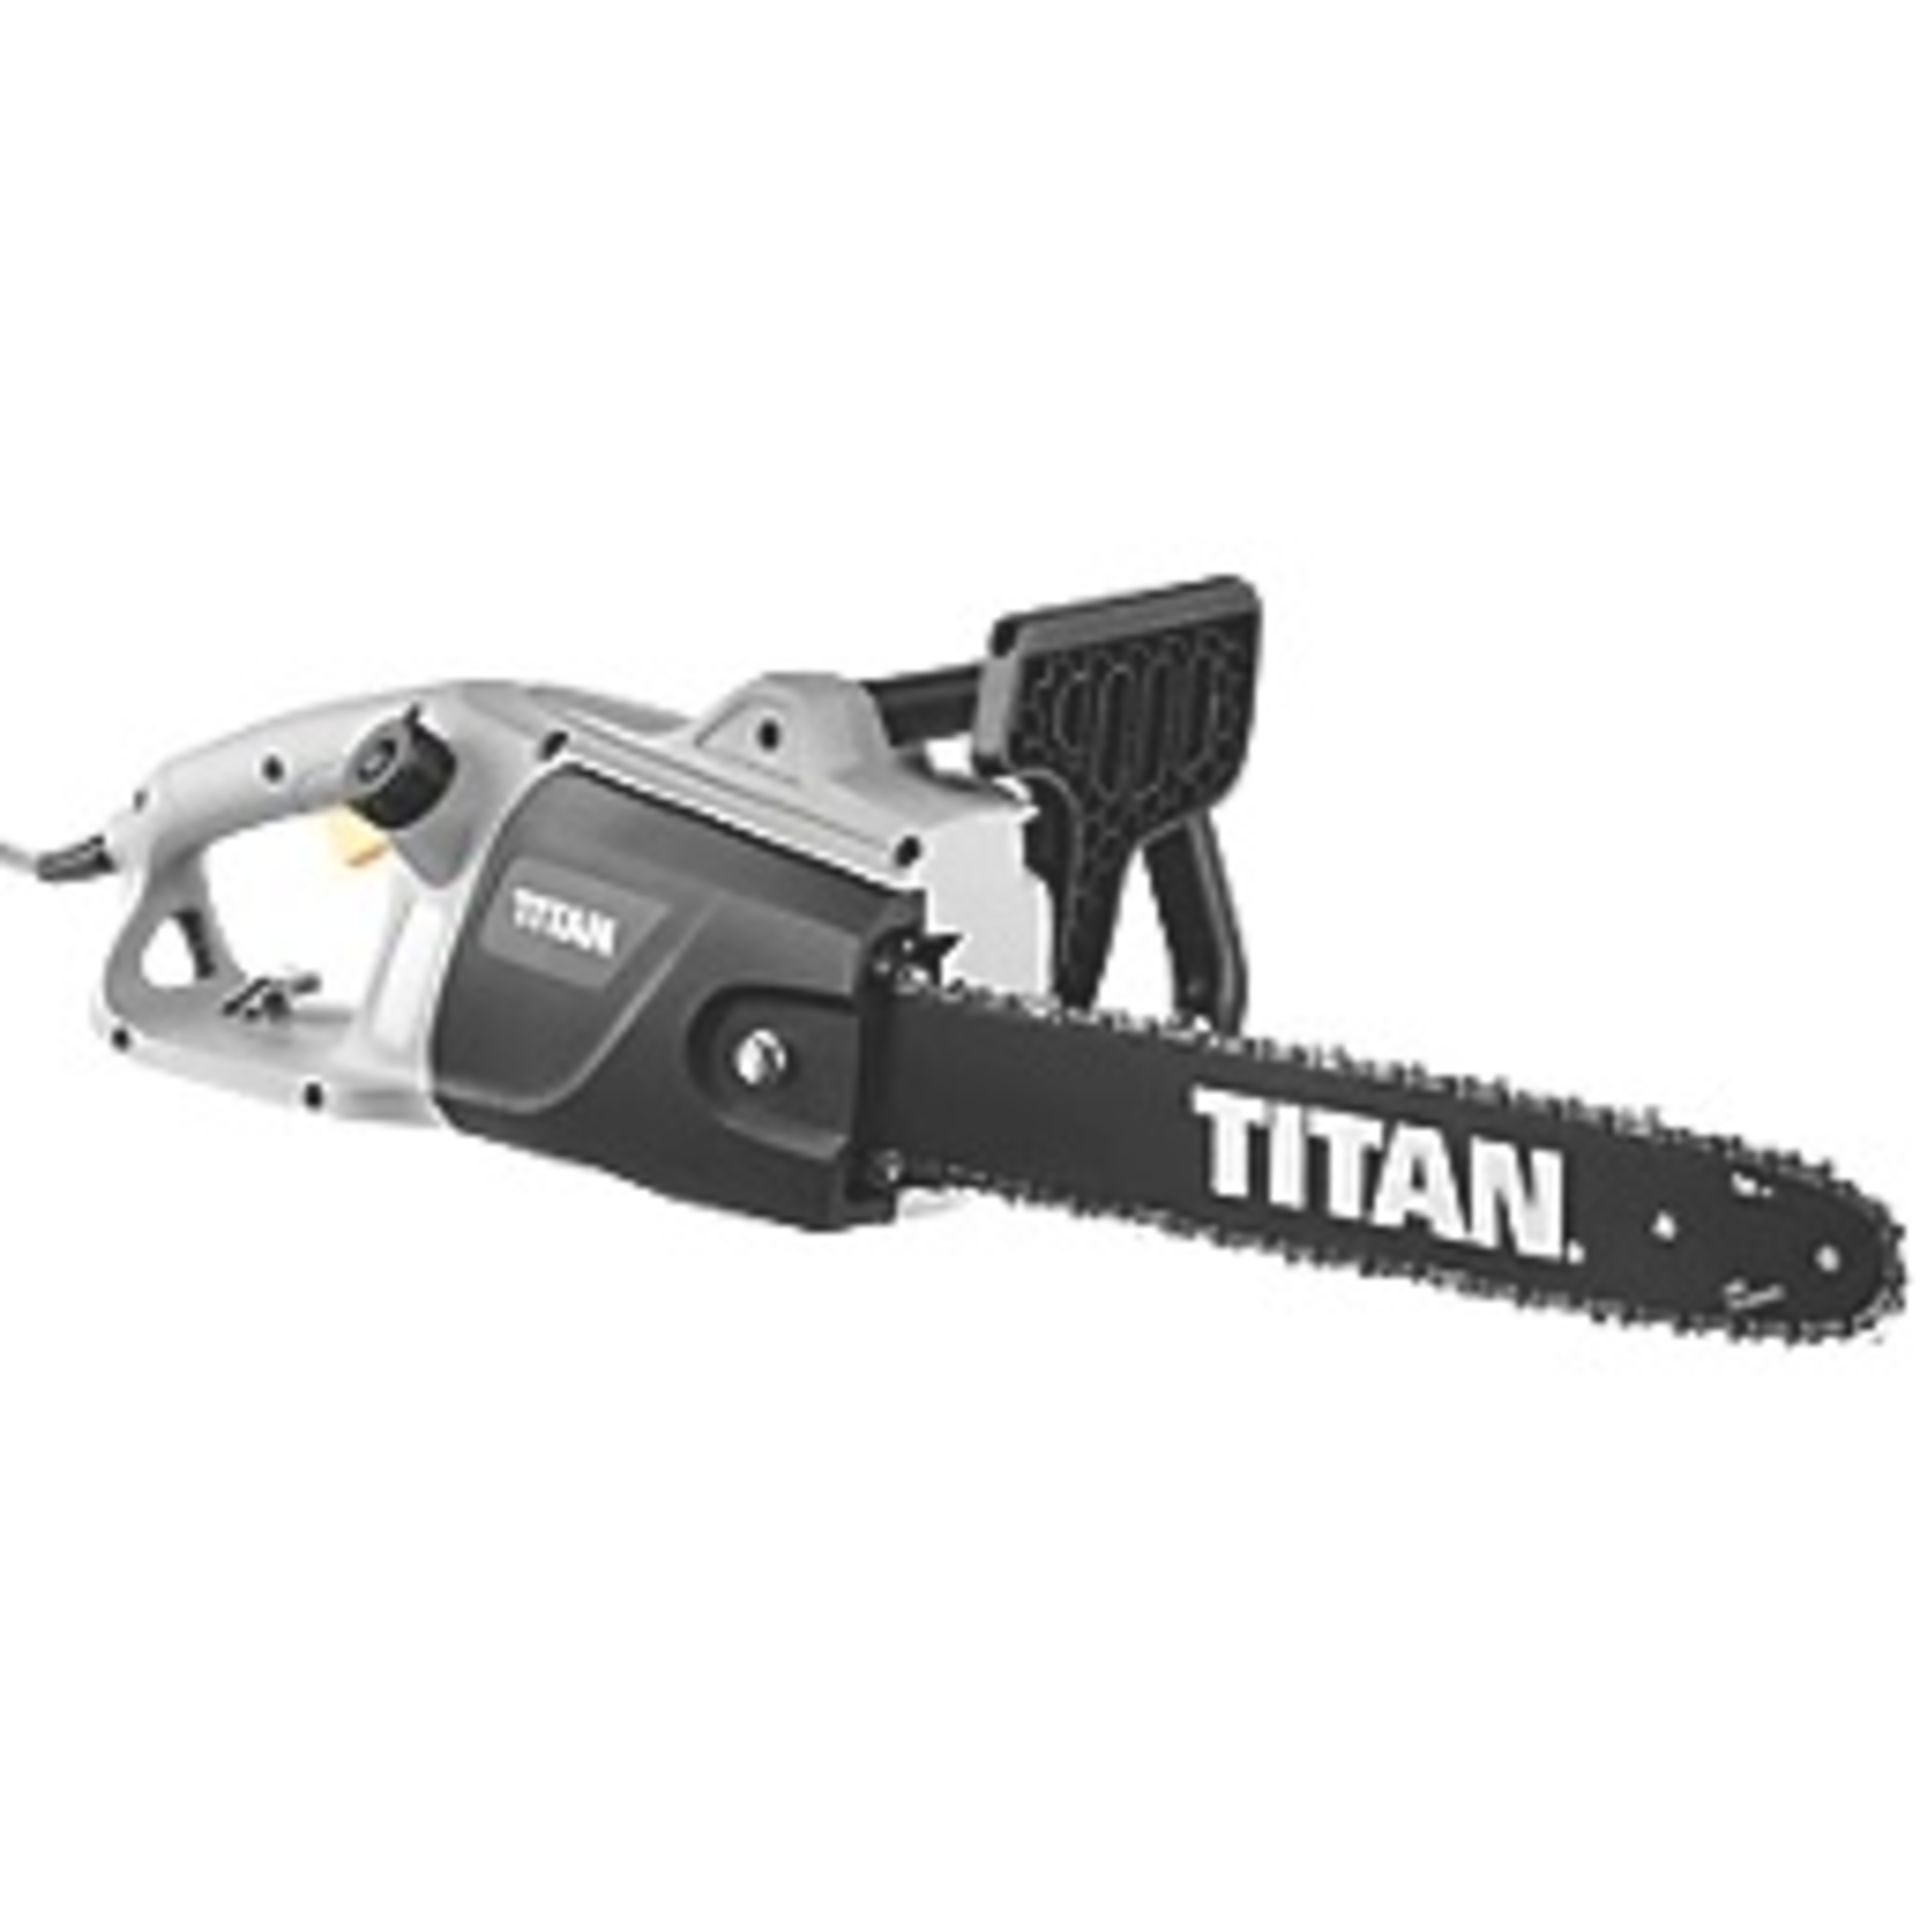 Titan Corded Electric Chainsaw TTL758CHN 2000W 230V 40cm Bar 14.5m/sec Speed (LOCATION – H/S R 3.